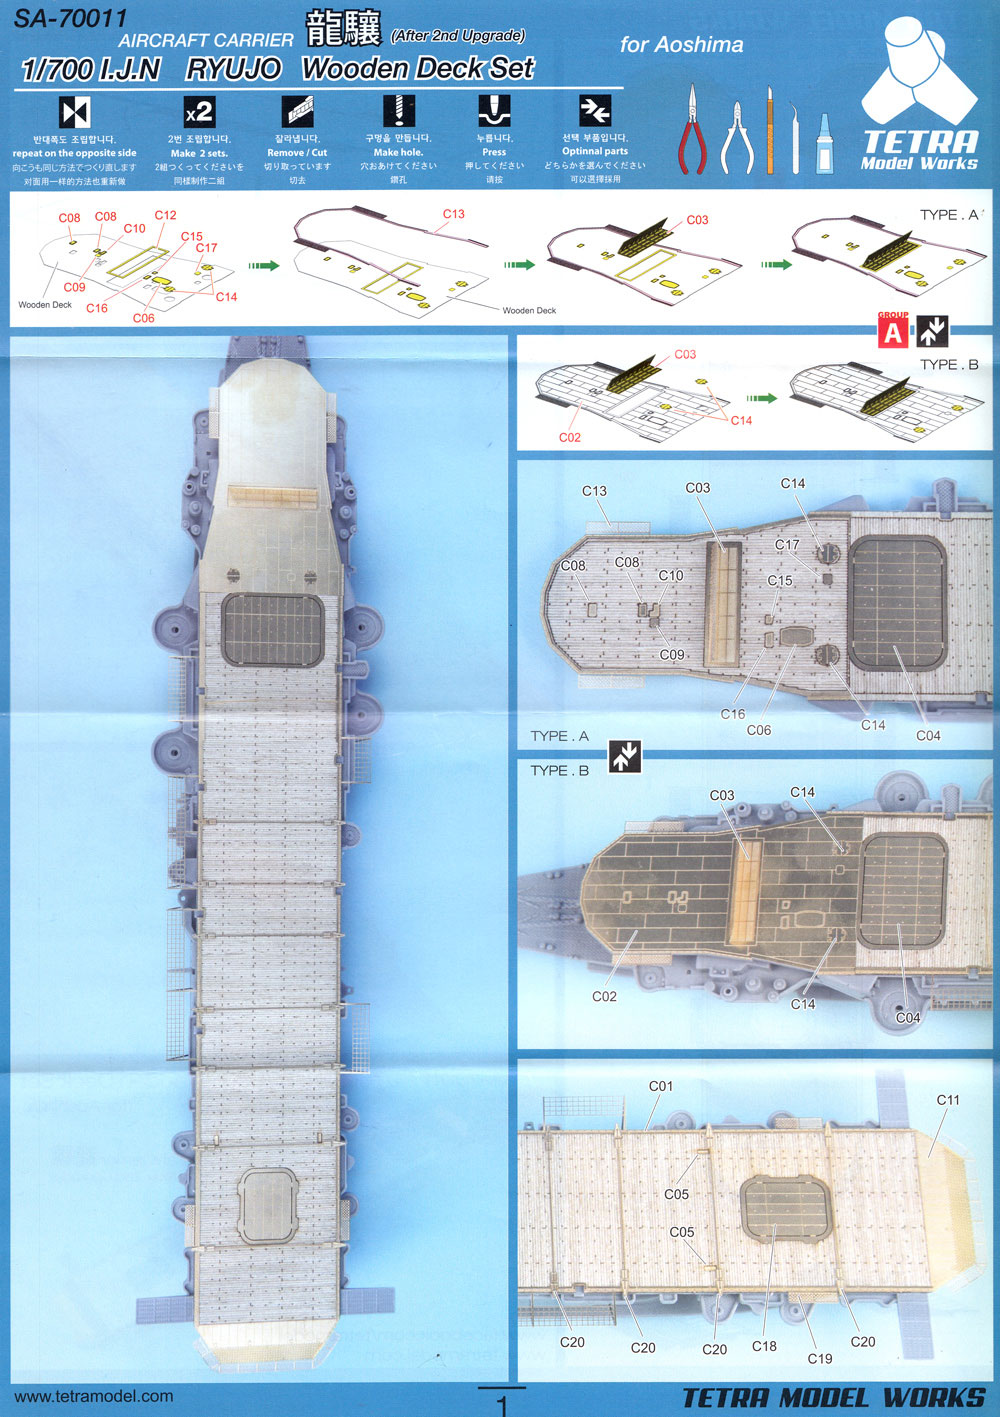 日本海軍 航空母艦 龍驤 第2次改装後 木製甲板 (アオシマ用) 木甲板 (テトラモデルワークス 艦船 アクセサリーパーツ No.SA-70011) 商品画像_2